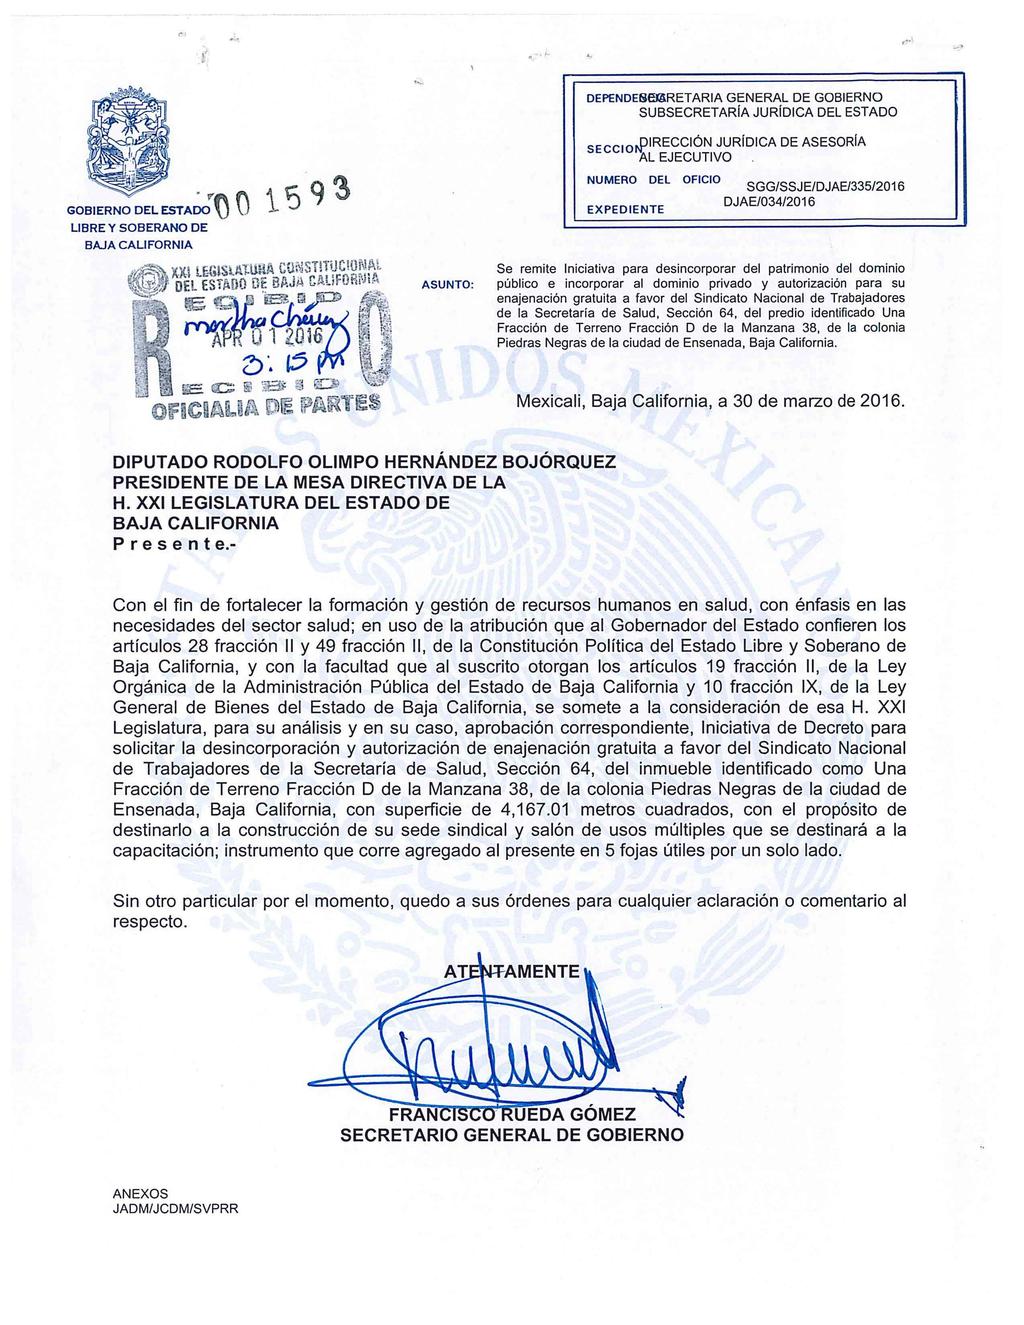 . ~... DEPENDESBARETARIA GENERAL DE GOBIERNO SUBSECRETARÍA JURÍDICA DEL ESTADO SECCIO,.PIRECCIÓN JURÍDICA DE ASESORÍA AL EJECUTIVO.